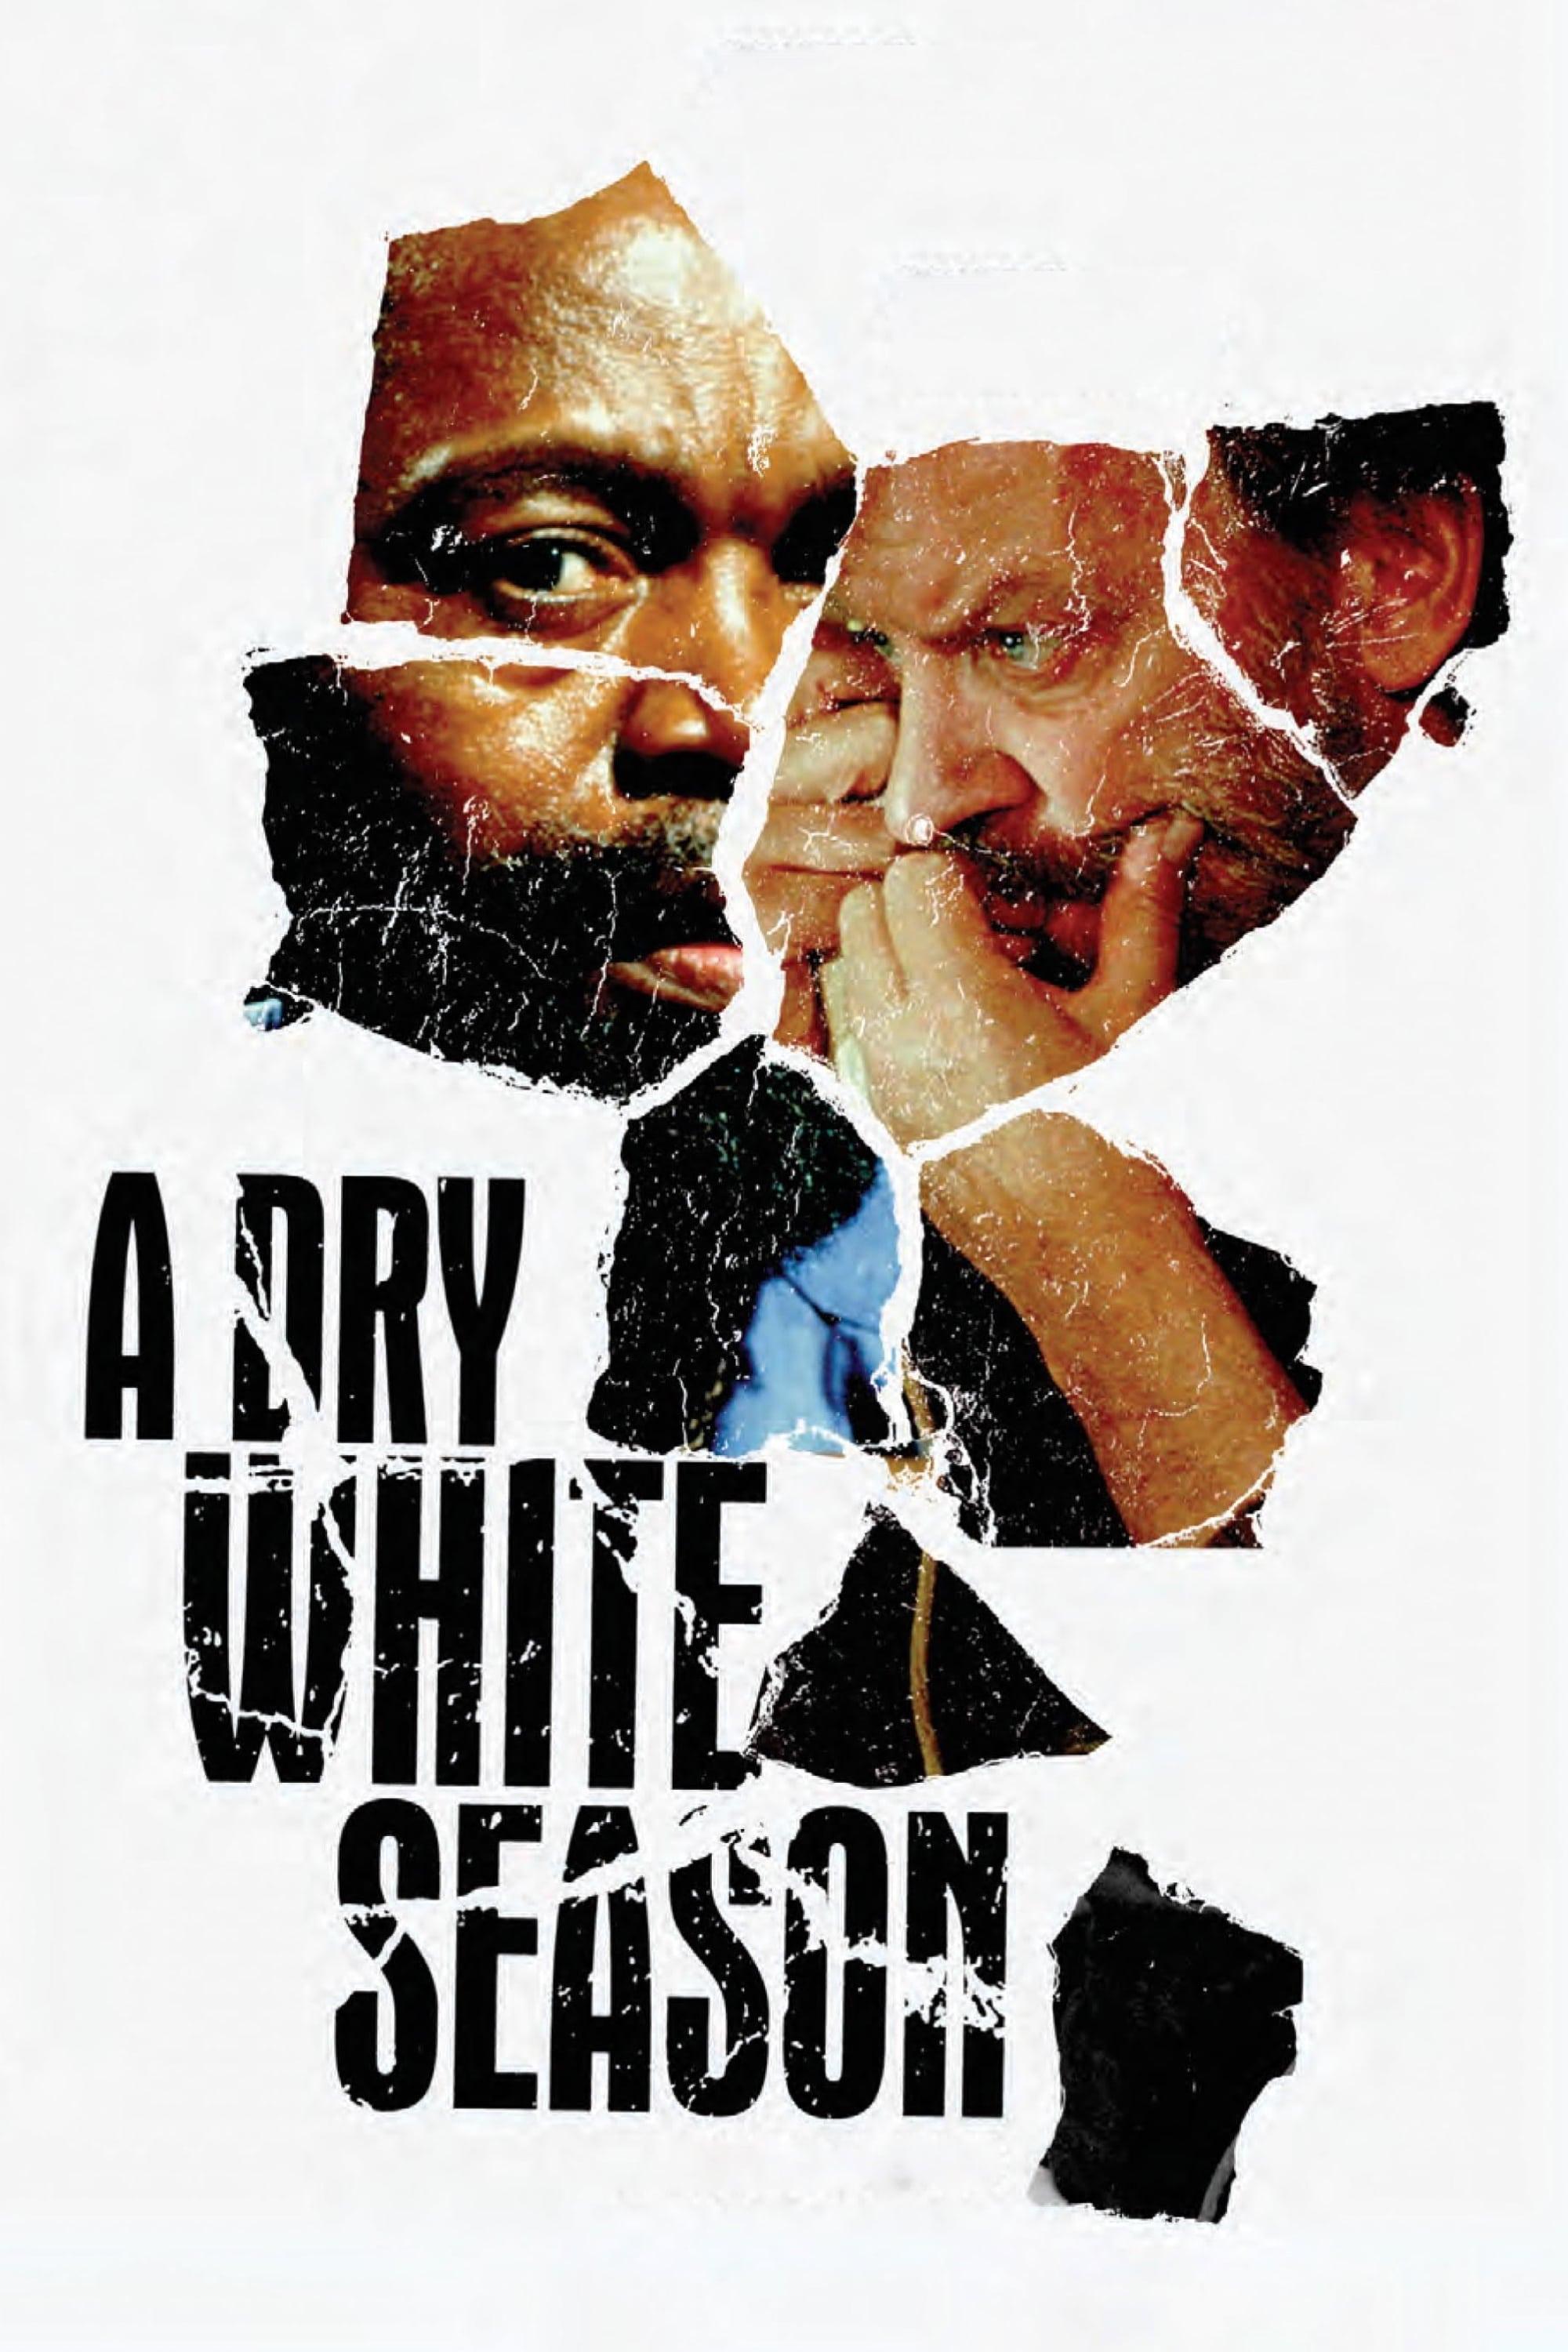 A Dry White Season poster